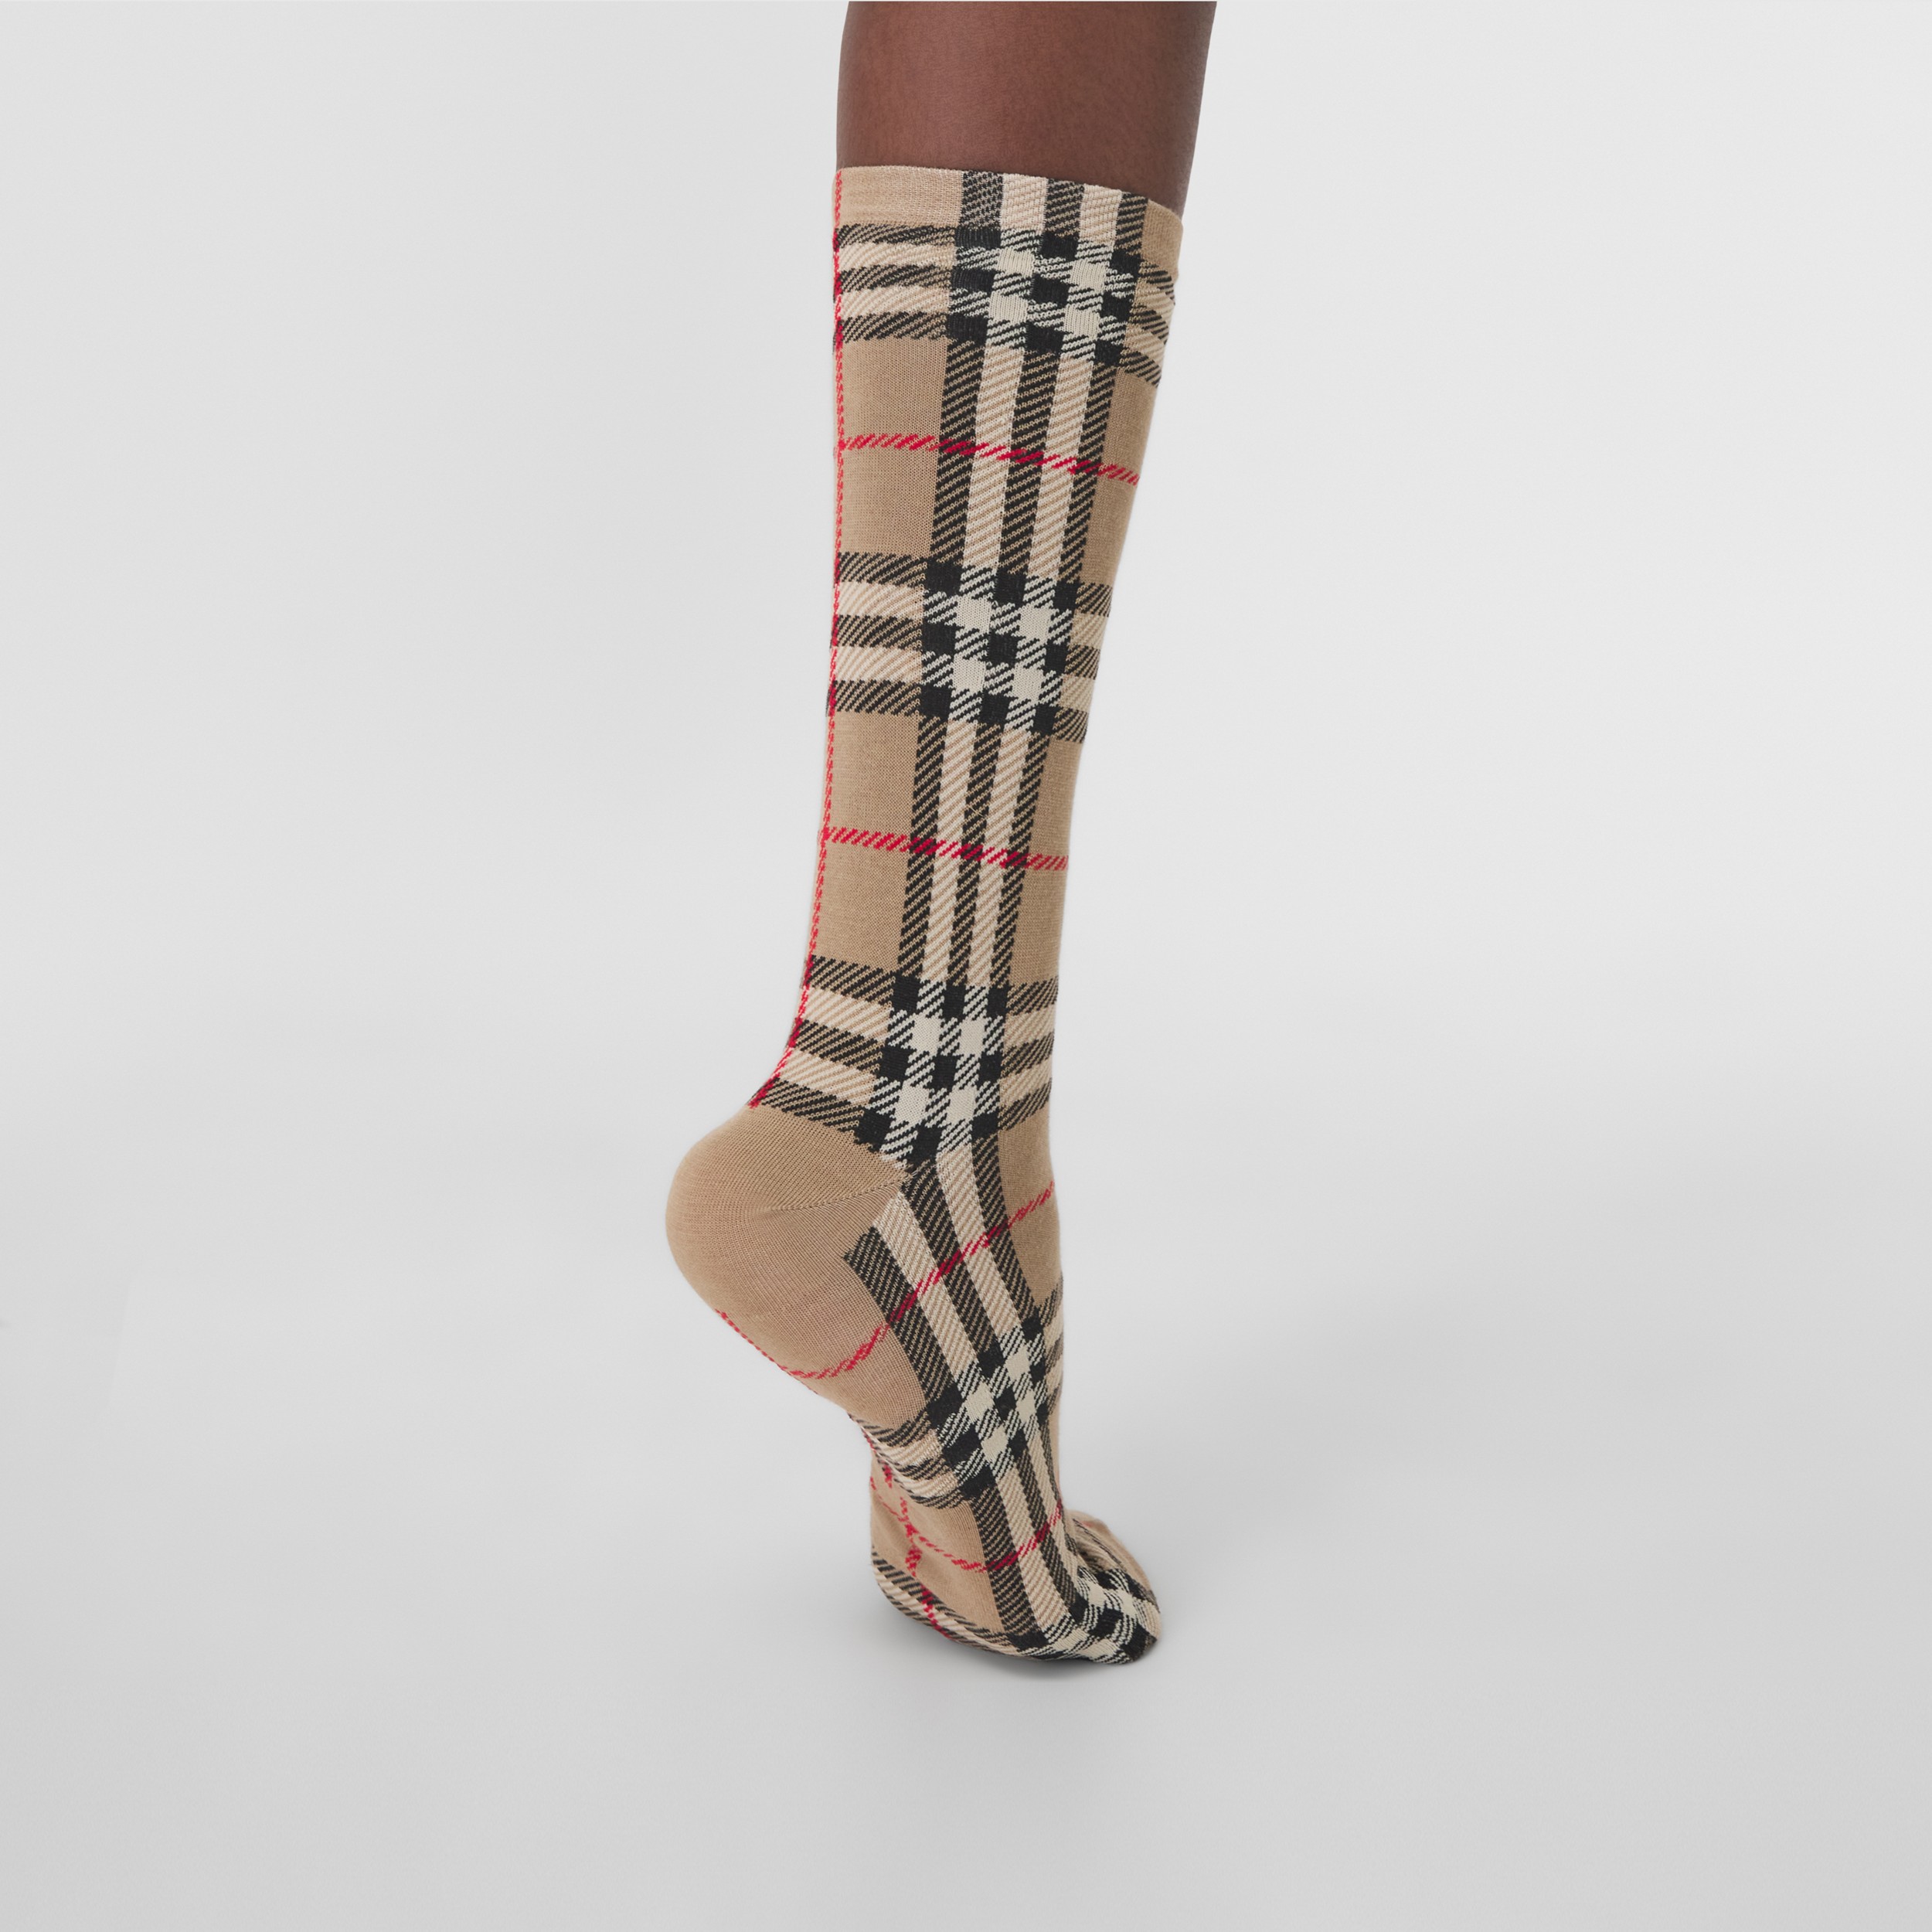 Cotton Blend Argyle Over The Knee Socks|Diamond Over The Knee Socks 